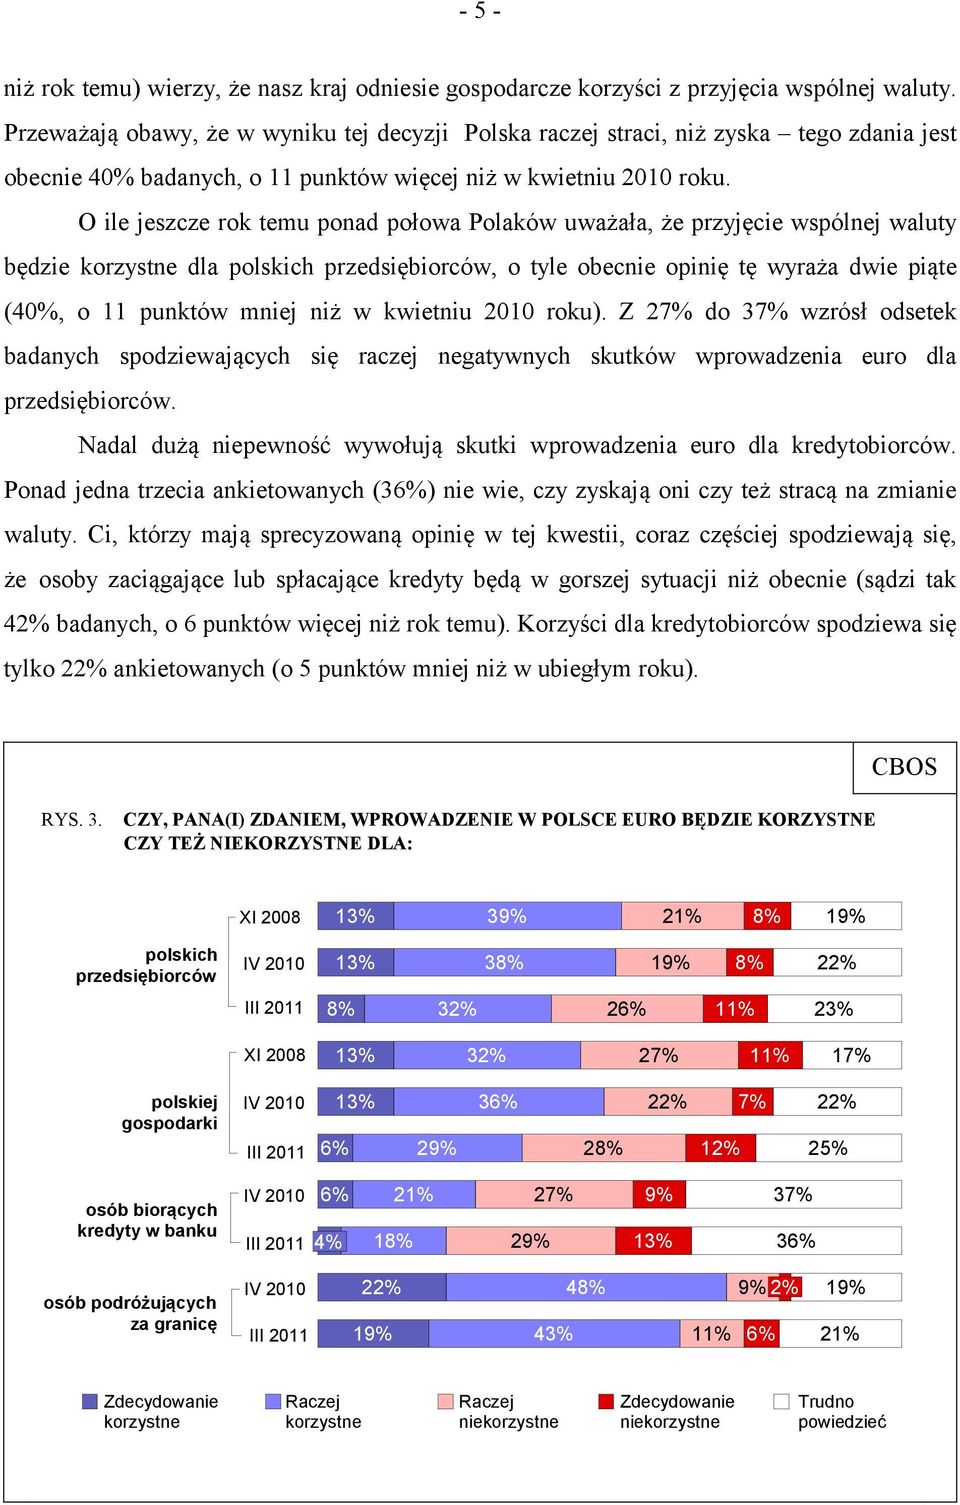 O ile jeszcze rok temu ponad połowa Polaków uważała, że przyjęcie wspólnej waluty będzie korzystne dla polskich przedsiębiorców, o tyle obecnie opinię tę wyraża dwie piąte (40%, o 11 punktów mniej